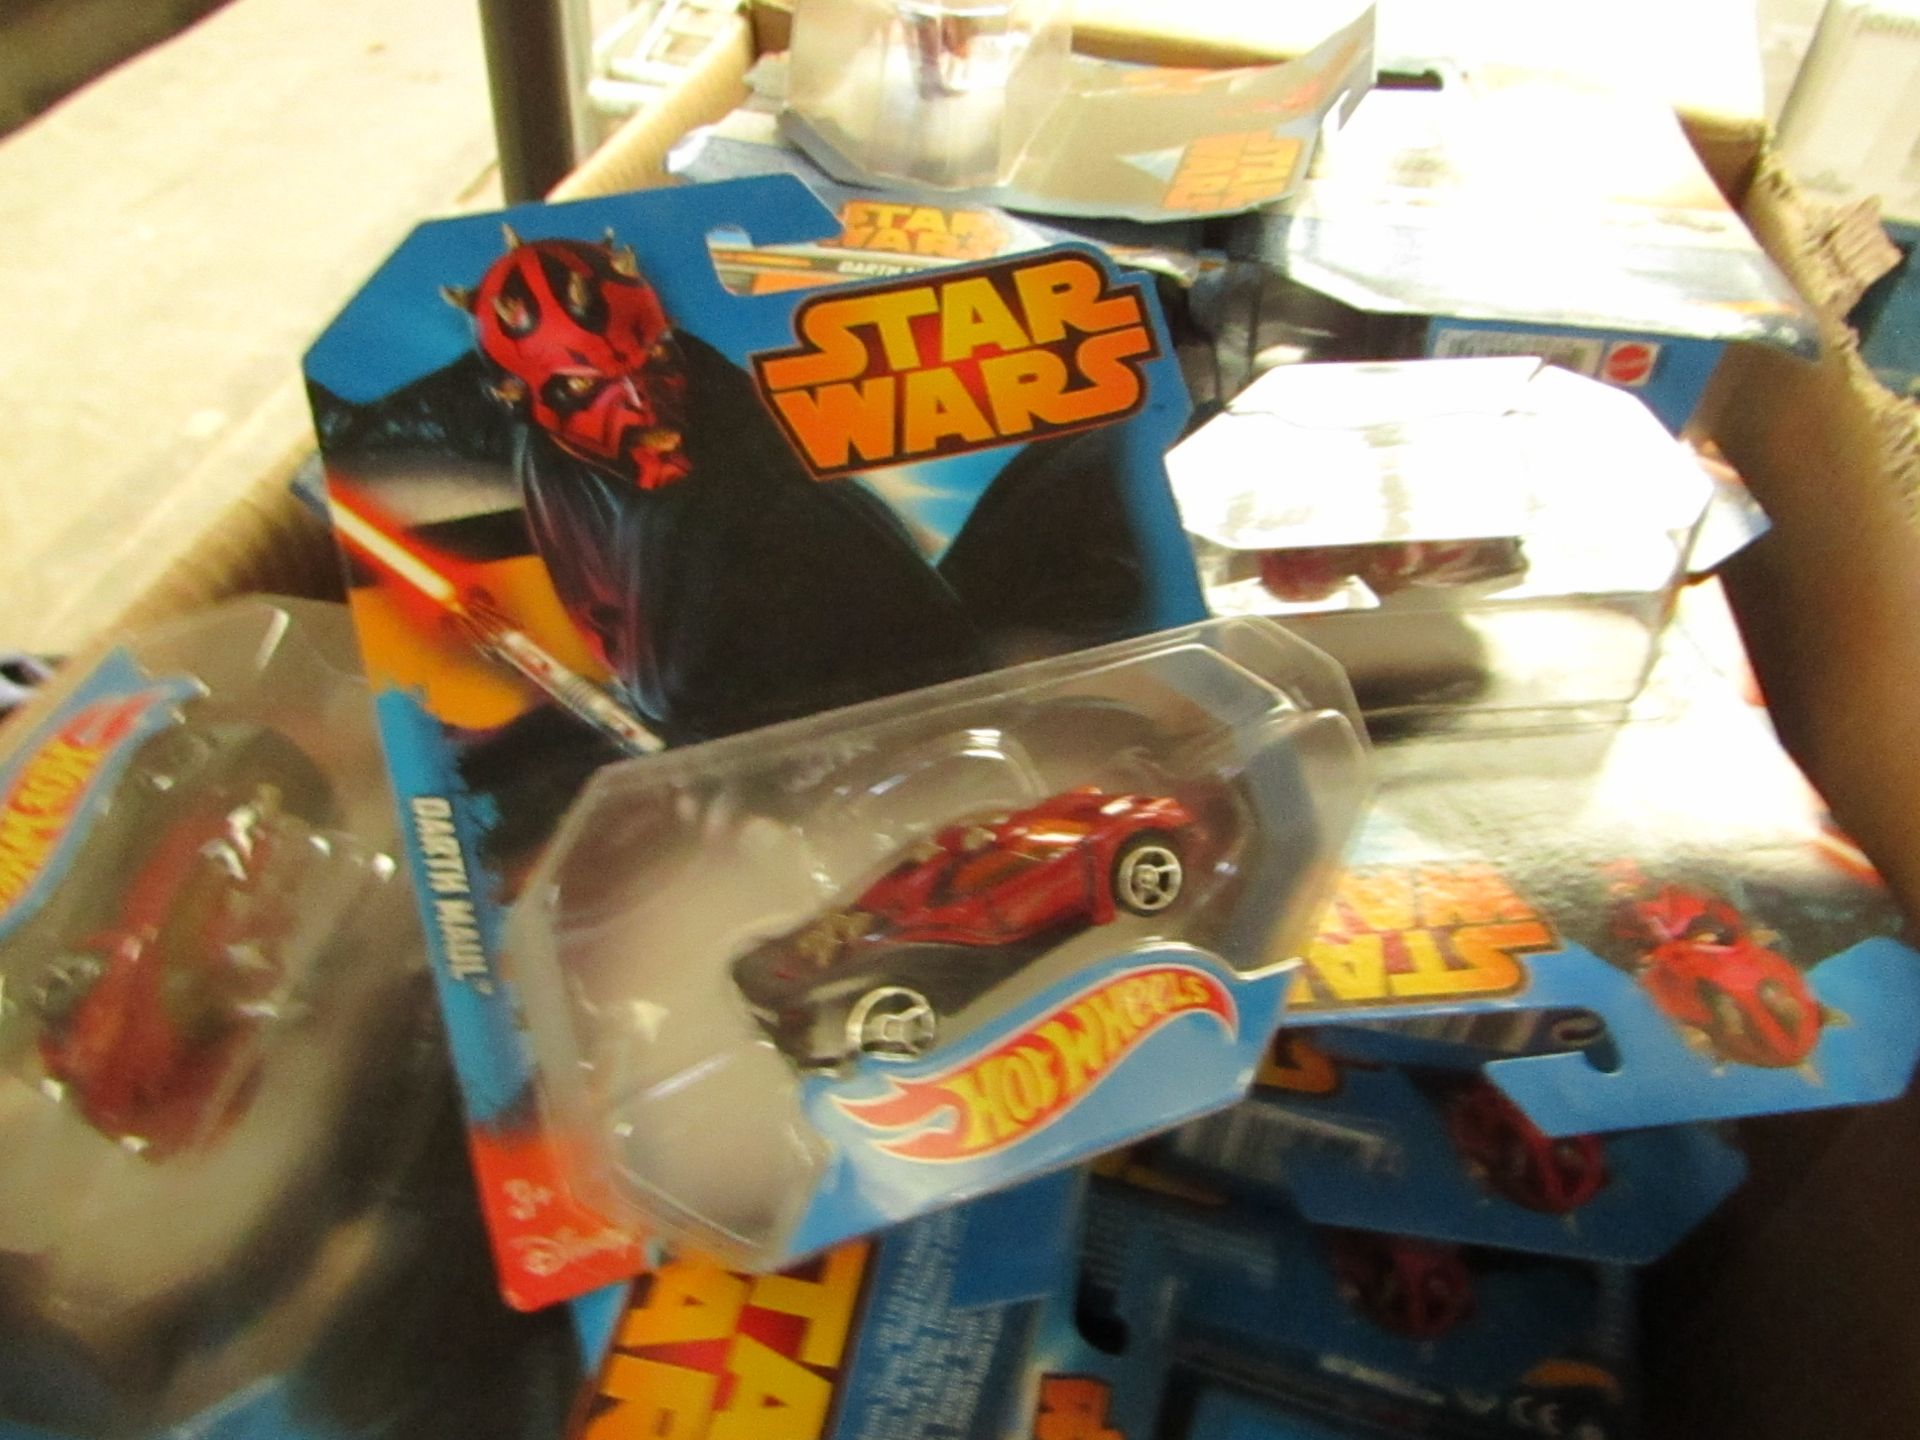 StarWars - Hotwheels - Darth Maul Toy Car - New & Packaged.